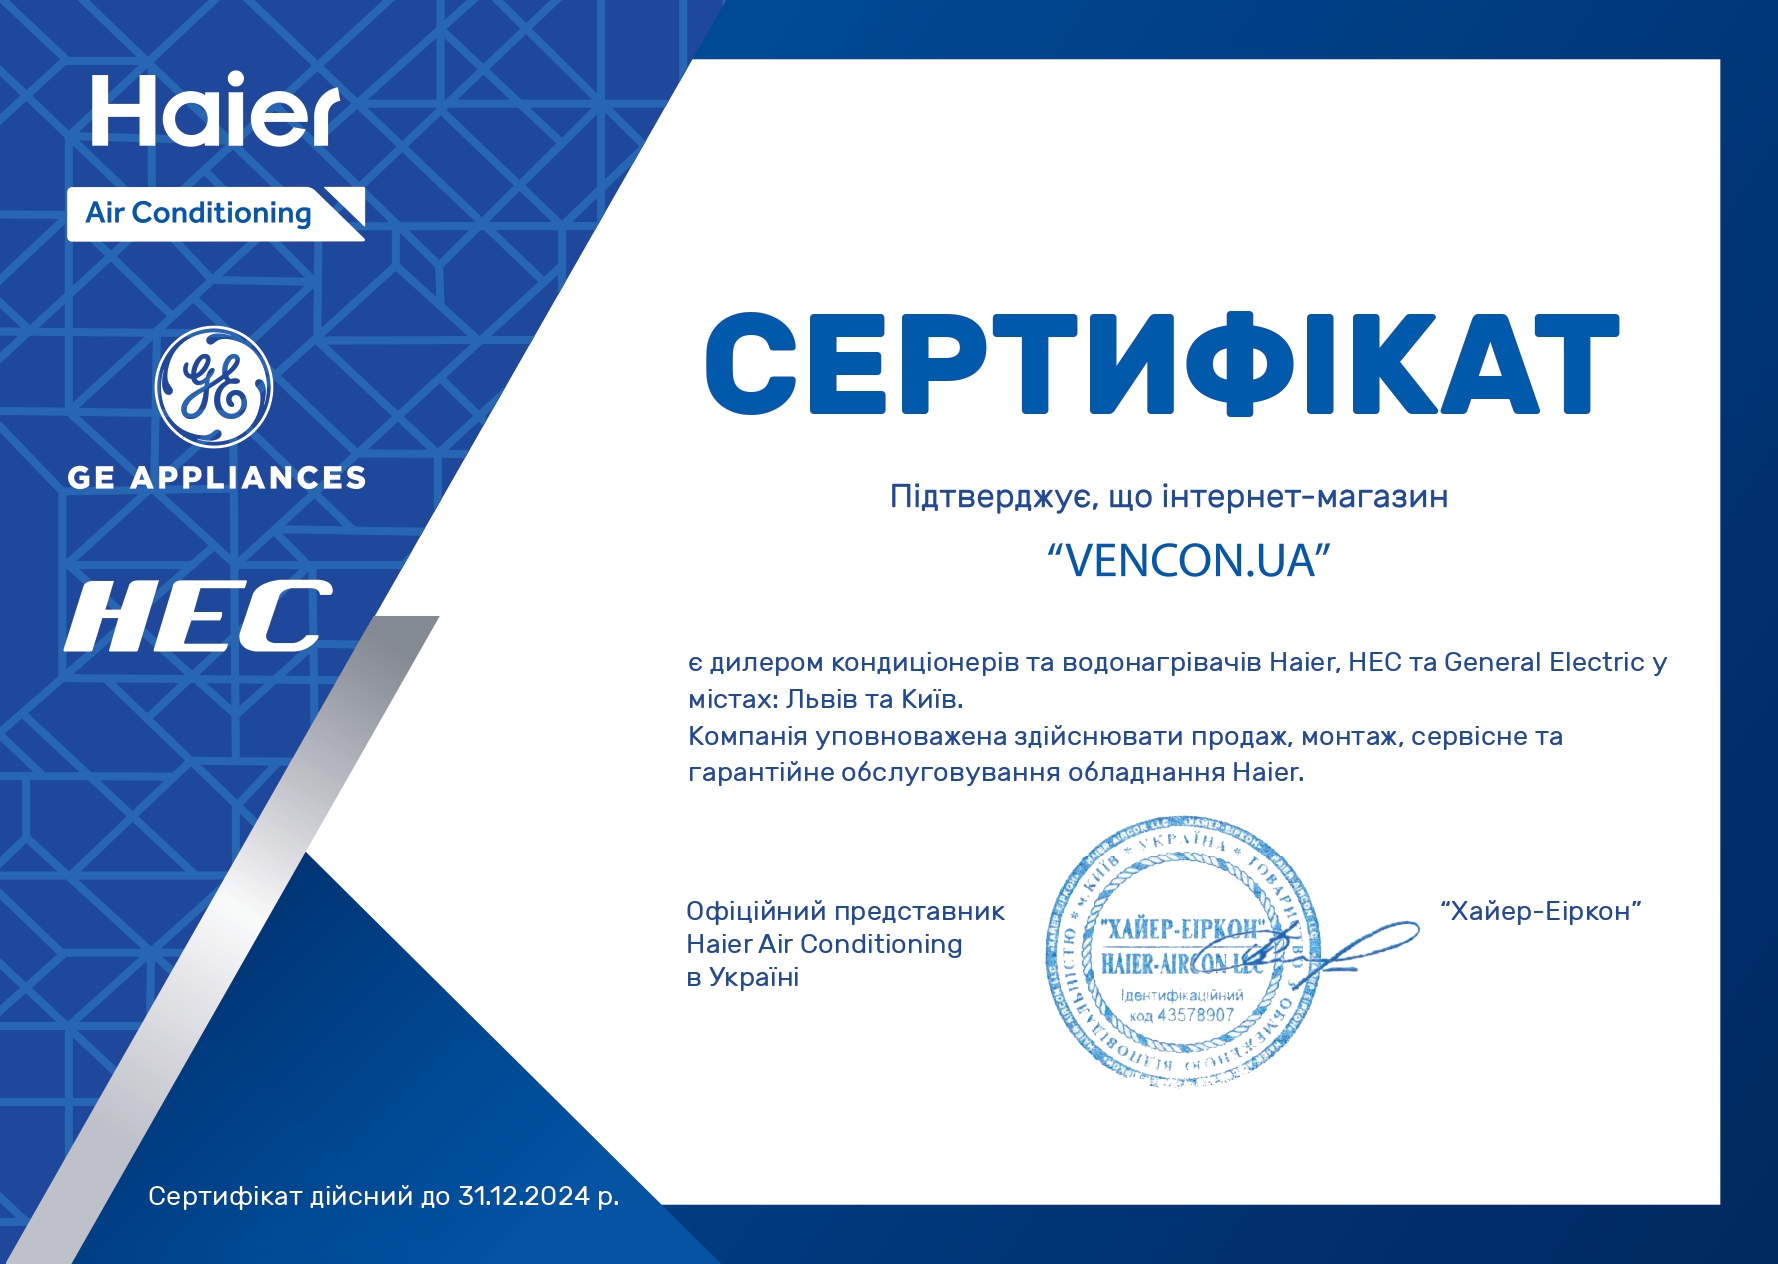 Кондиционеры Haier 18 тыс. BTU - сертификат официального продавца Haier